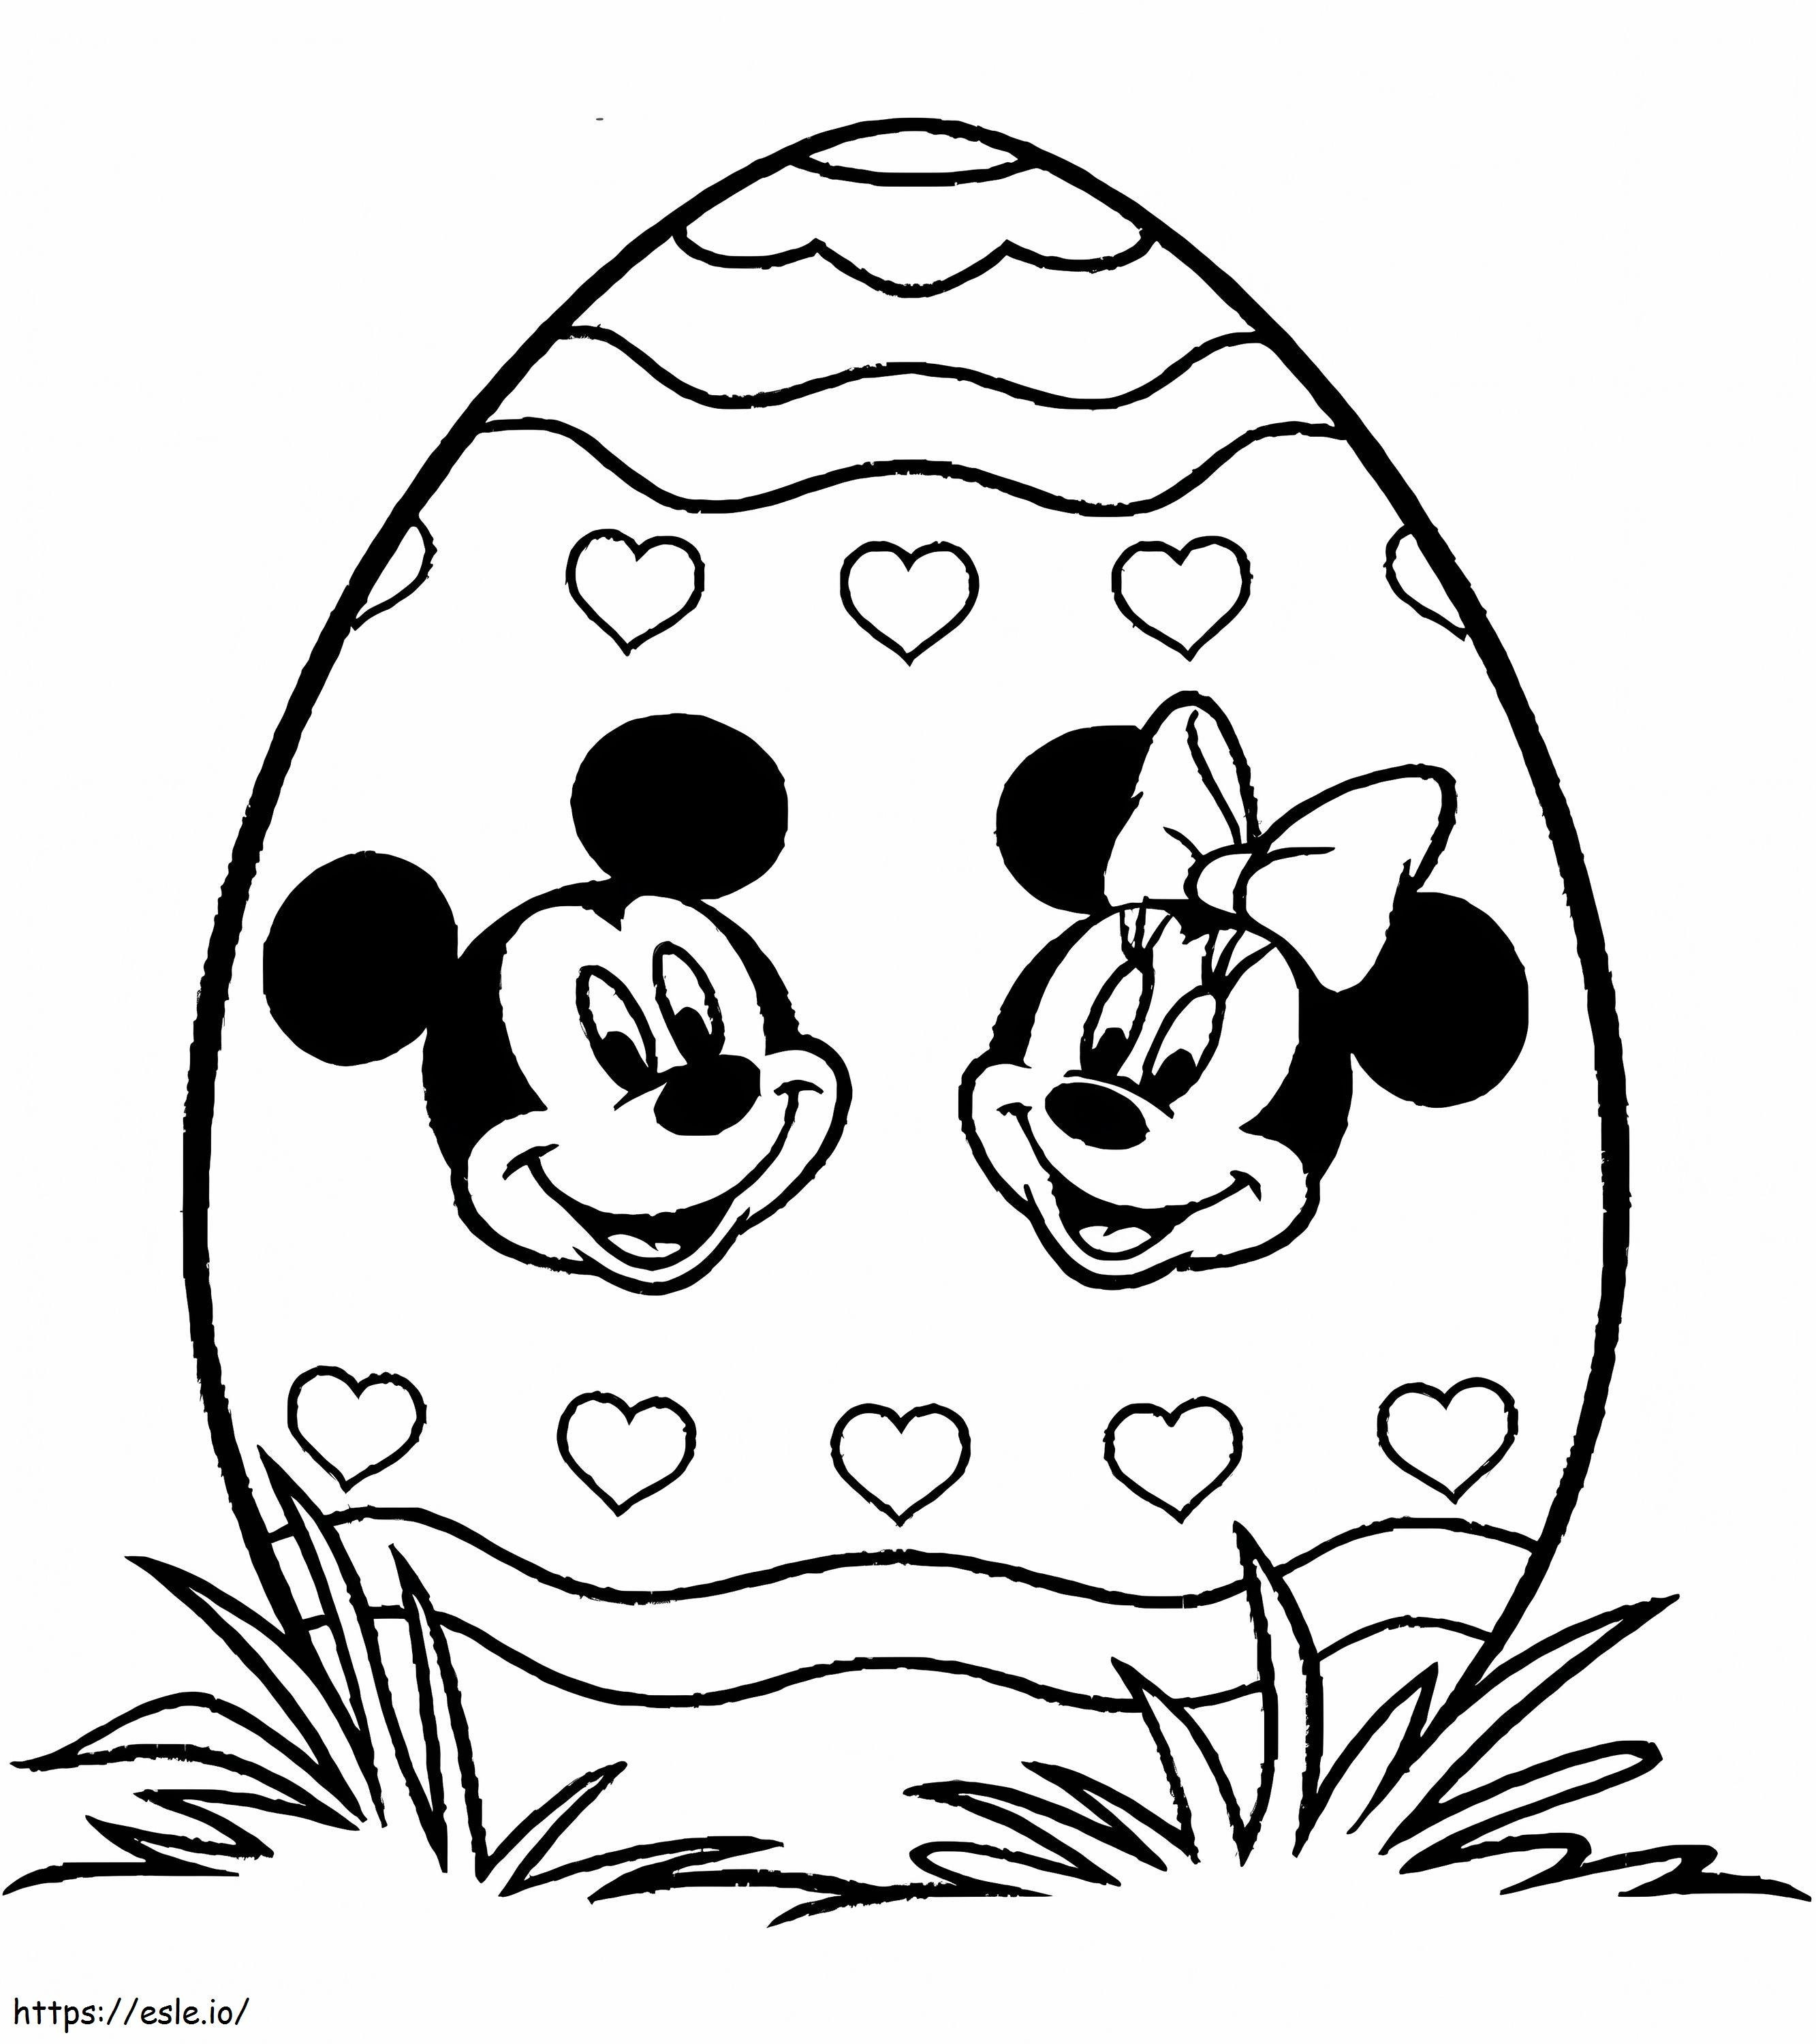 Ouă de Paște imprimate cu Mickey Mouse și Minnie Mouse de colorat